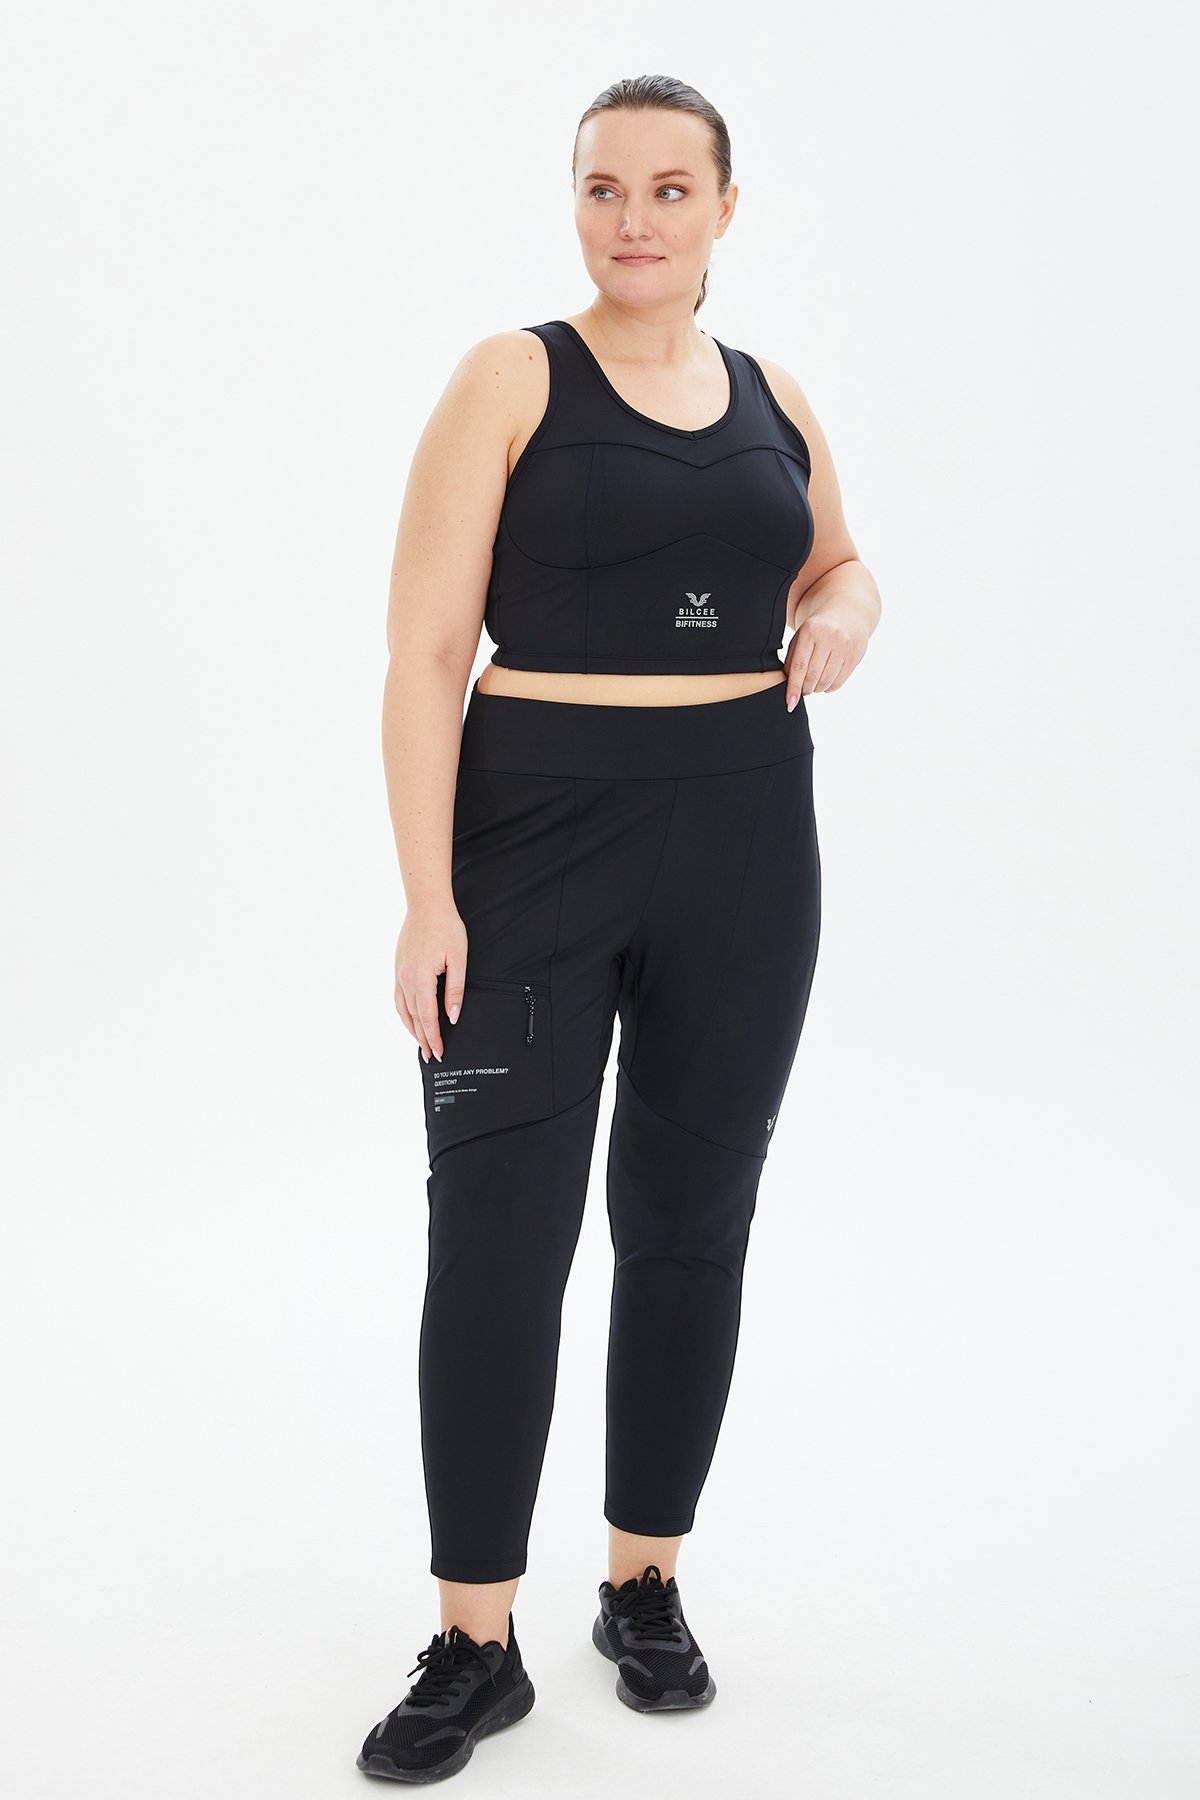 Kadın Siyah Fitness-Antrenman Spor Fashion Crop Top Toparlayıcı Bra Sporcu Sütyeni Büstiyer 0604 - 19